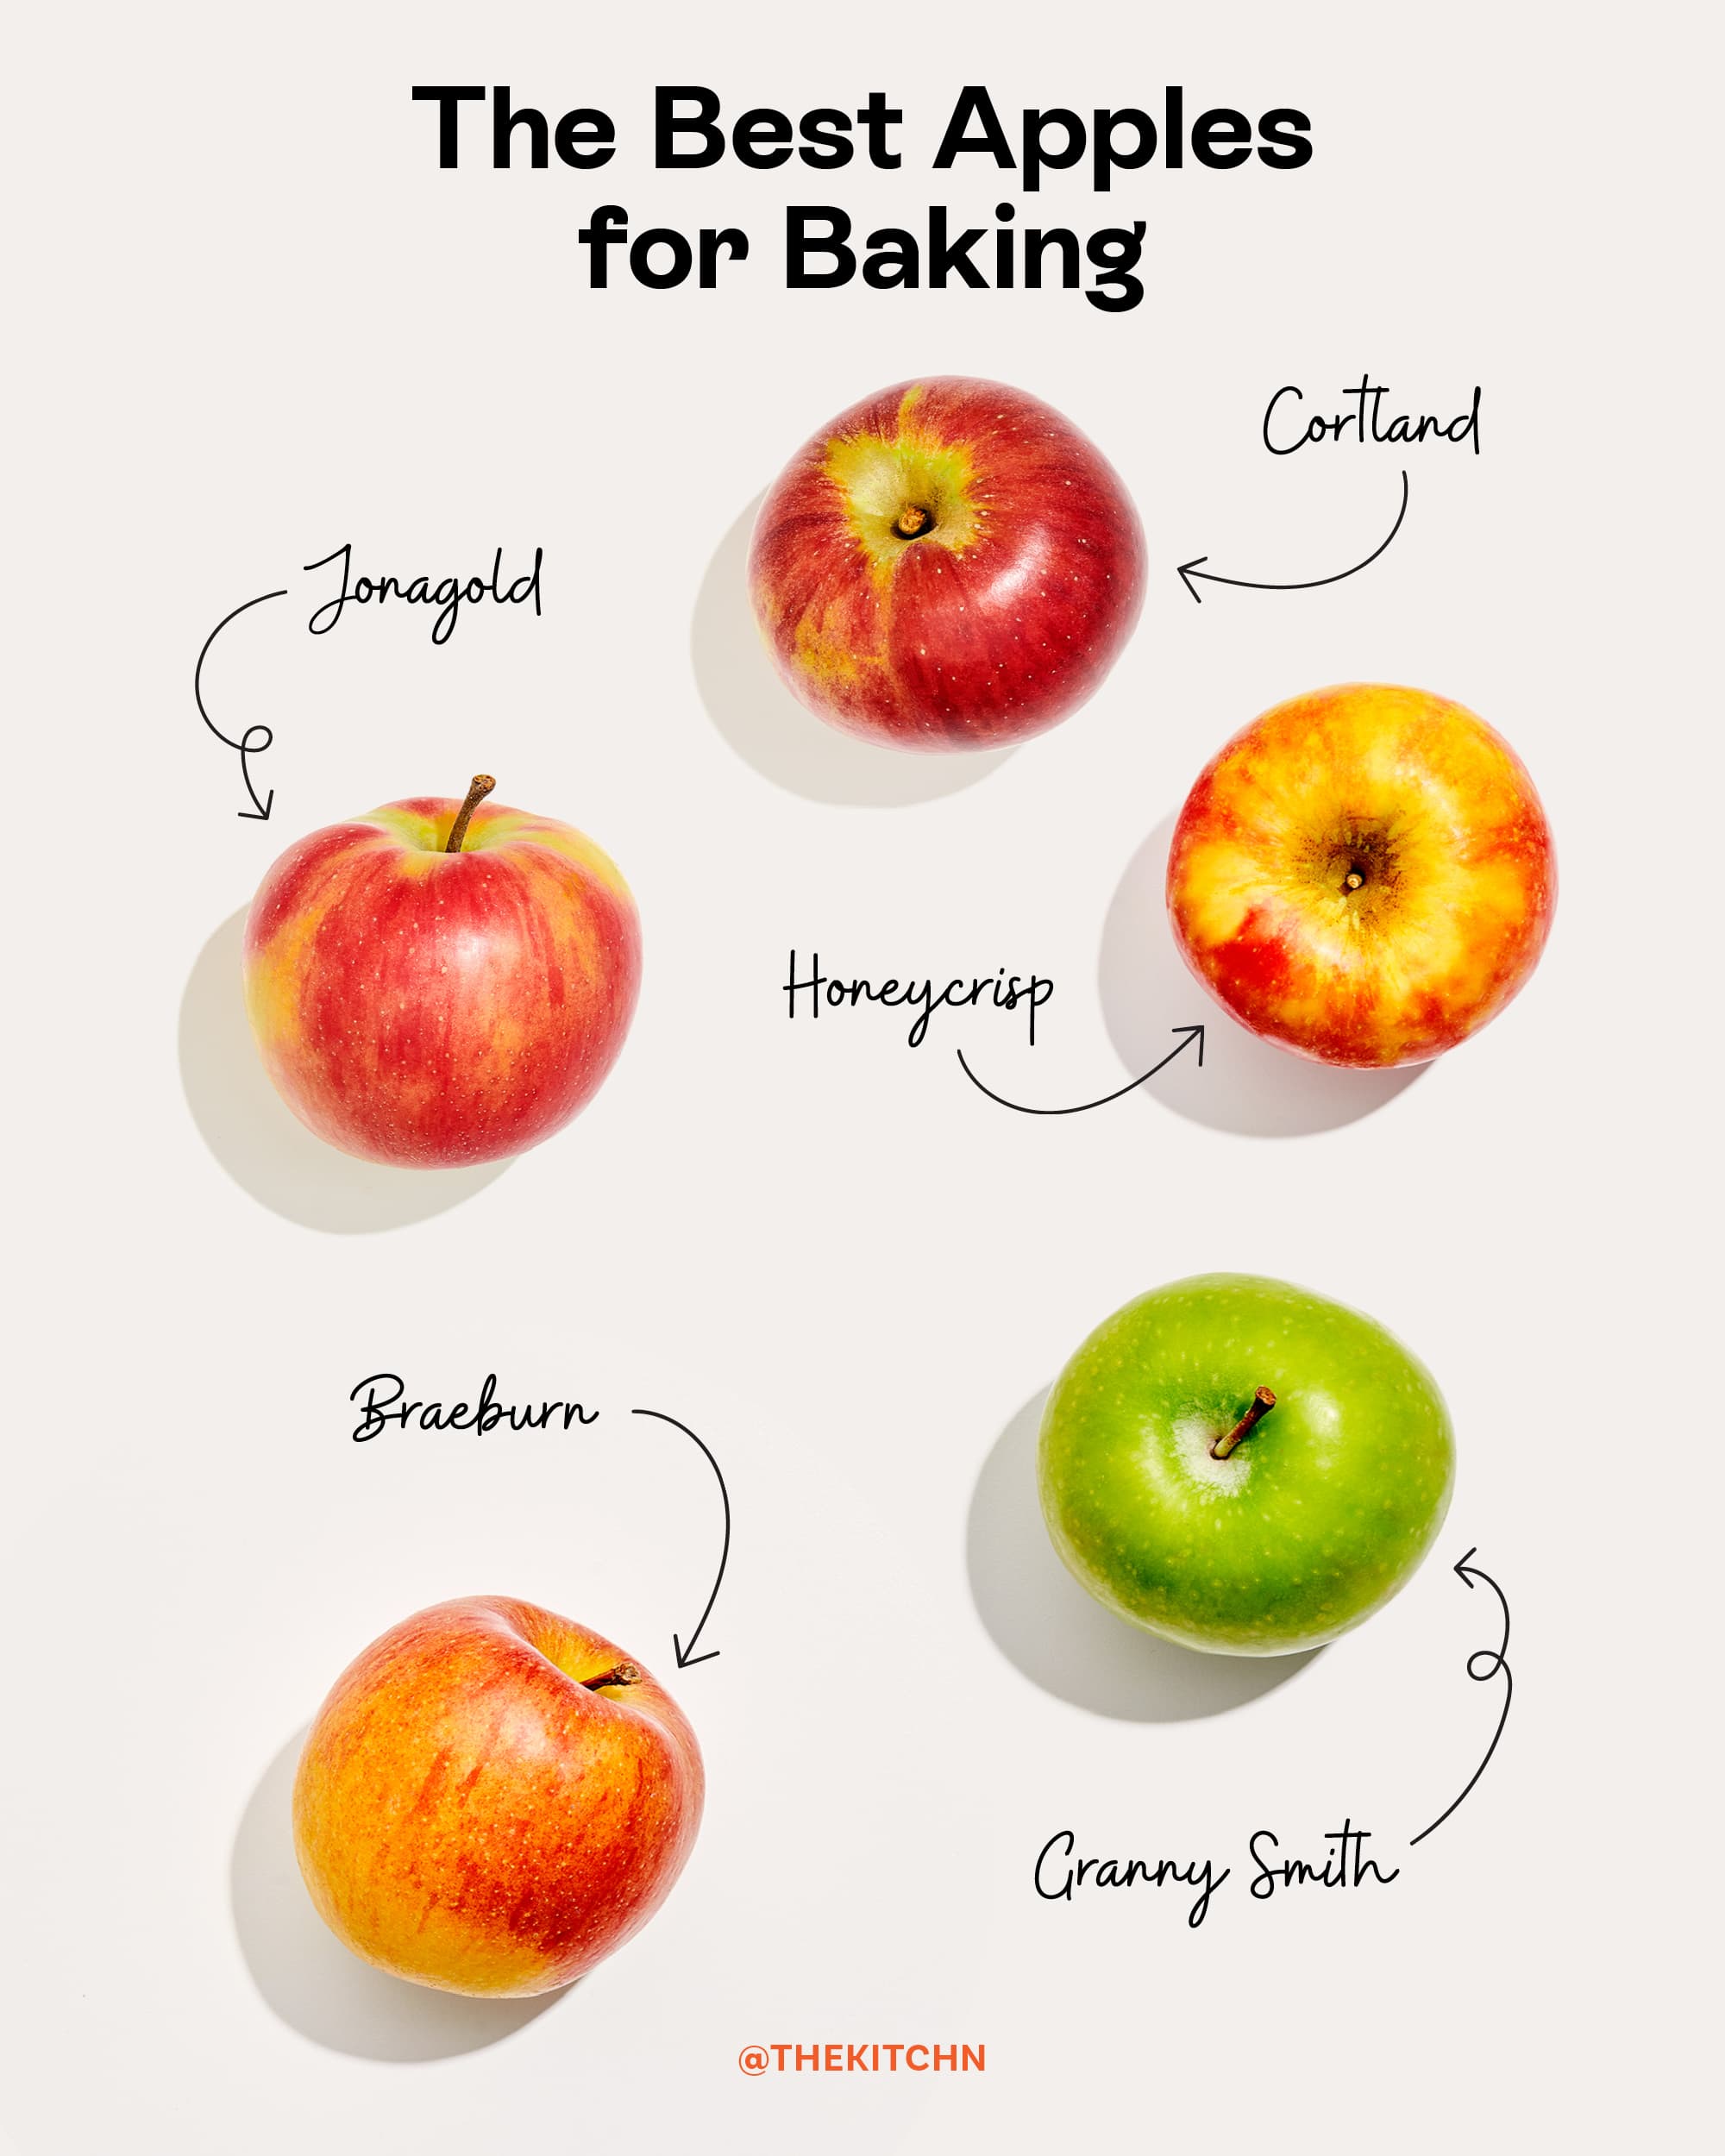 https://cdn.apartmenttherapy.info/image/upload/v1665601410/k/Design/2022-10/best-baking-apples/Best-Baking-Apples-social-1.jpg